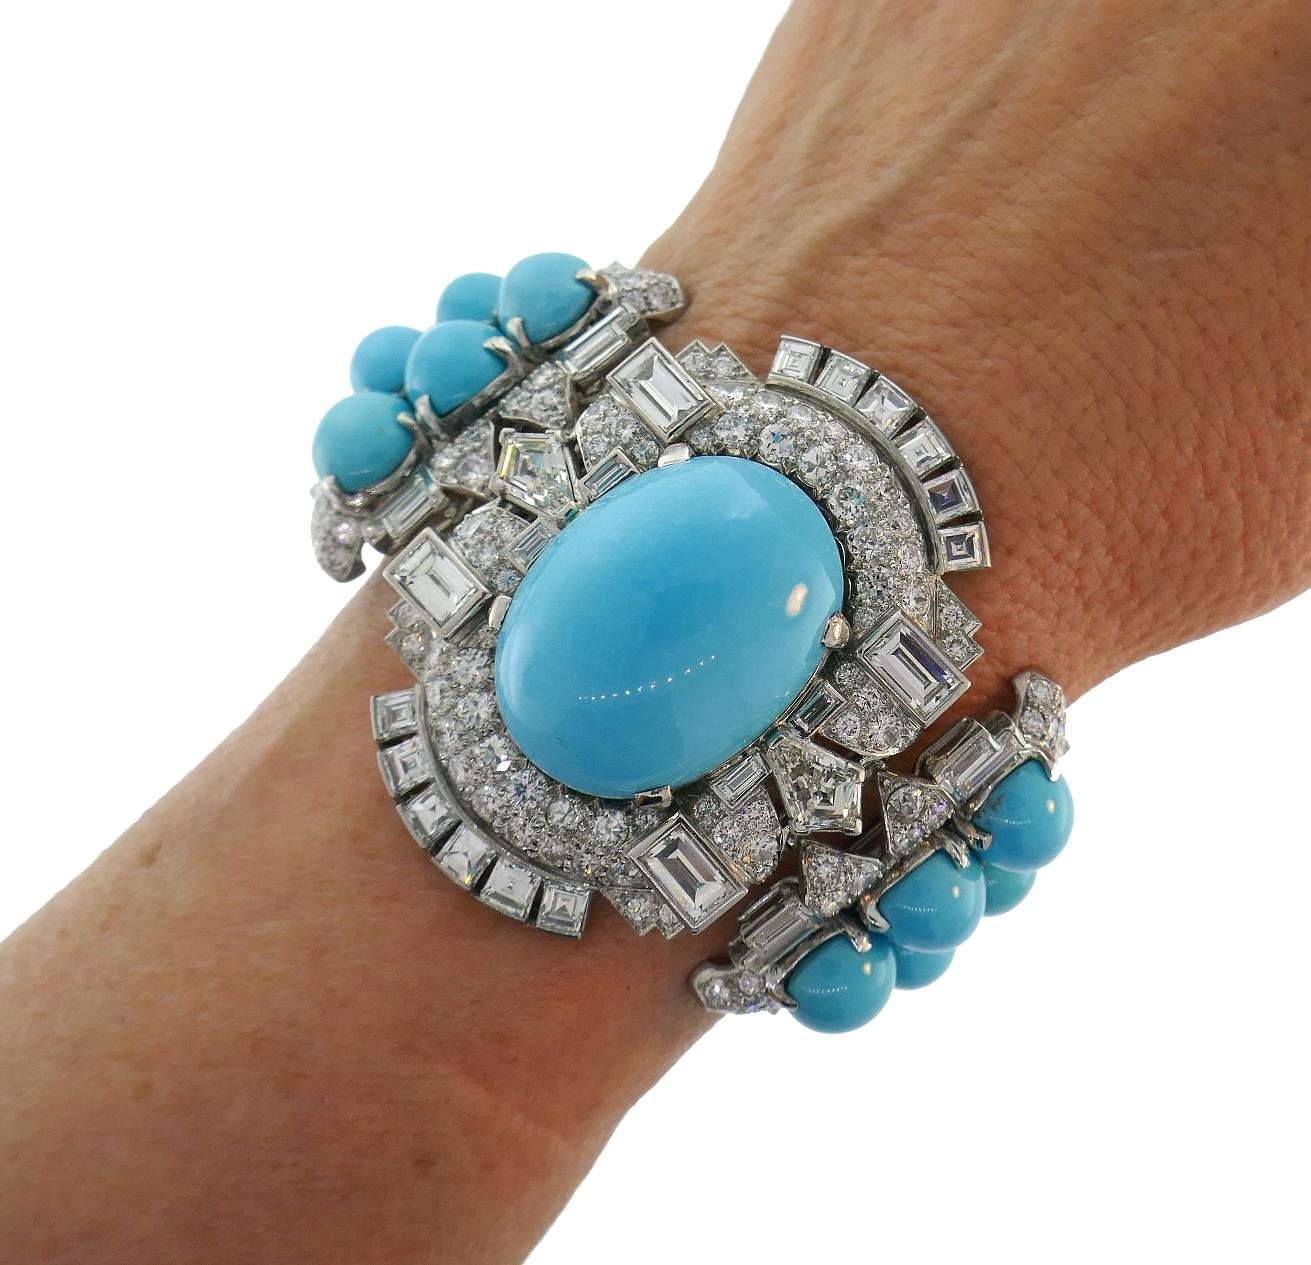 Remarquable bracelet Art déco Revival créé par Trabert et Mauboussin dans les années 1930.
Réalisé en platine, le bracelet comporte environ 127 carats de turquoise persane et de
22,26 carats de diamants. Les diamants sont de couleur G- H et de